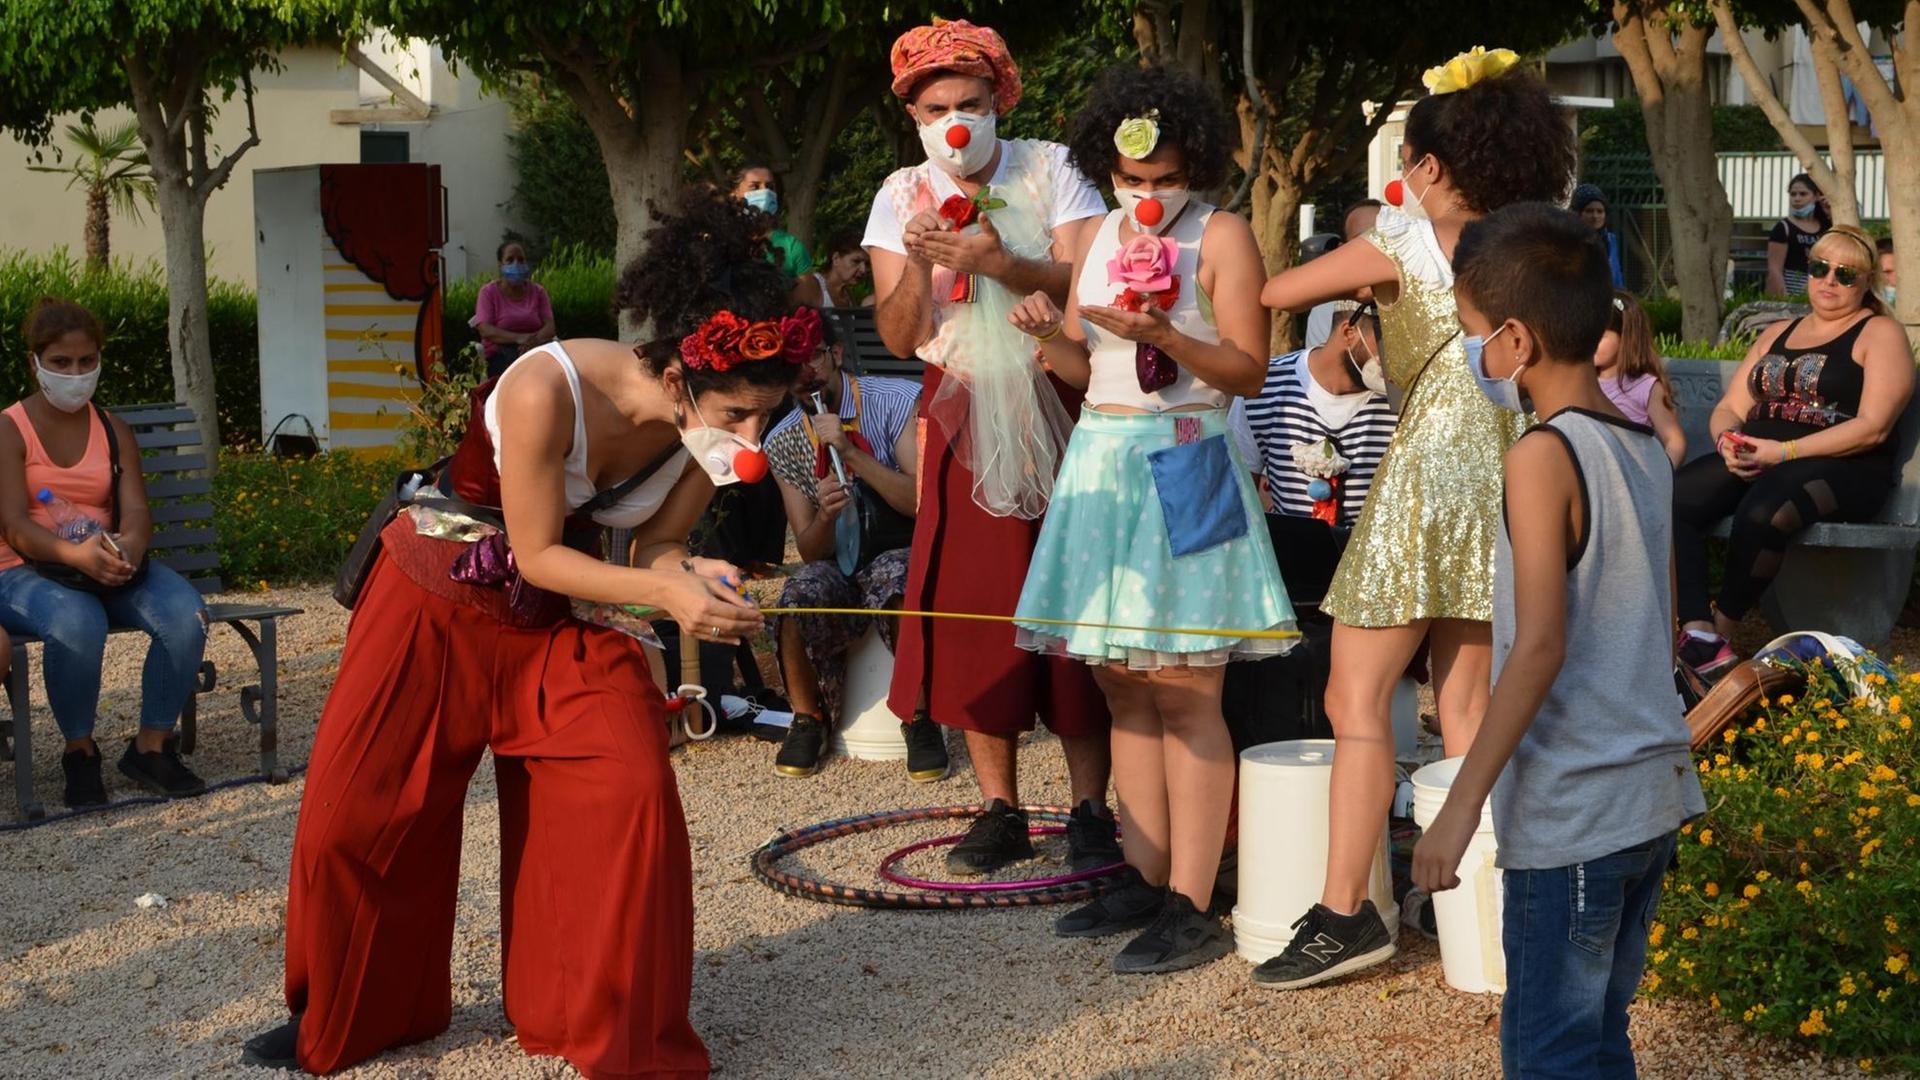 Die libanesische Theatergruppe "Clown me in" spielt und tanzt mit Kindern in einem Stadtviertel von Beirut